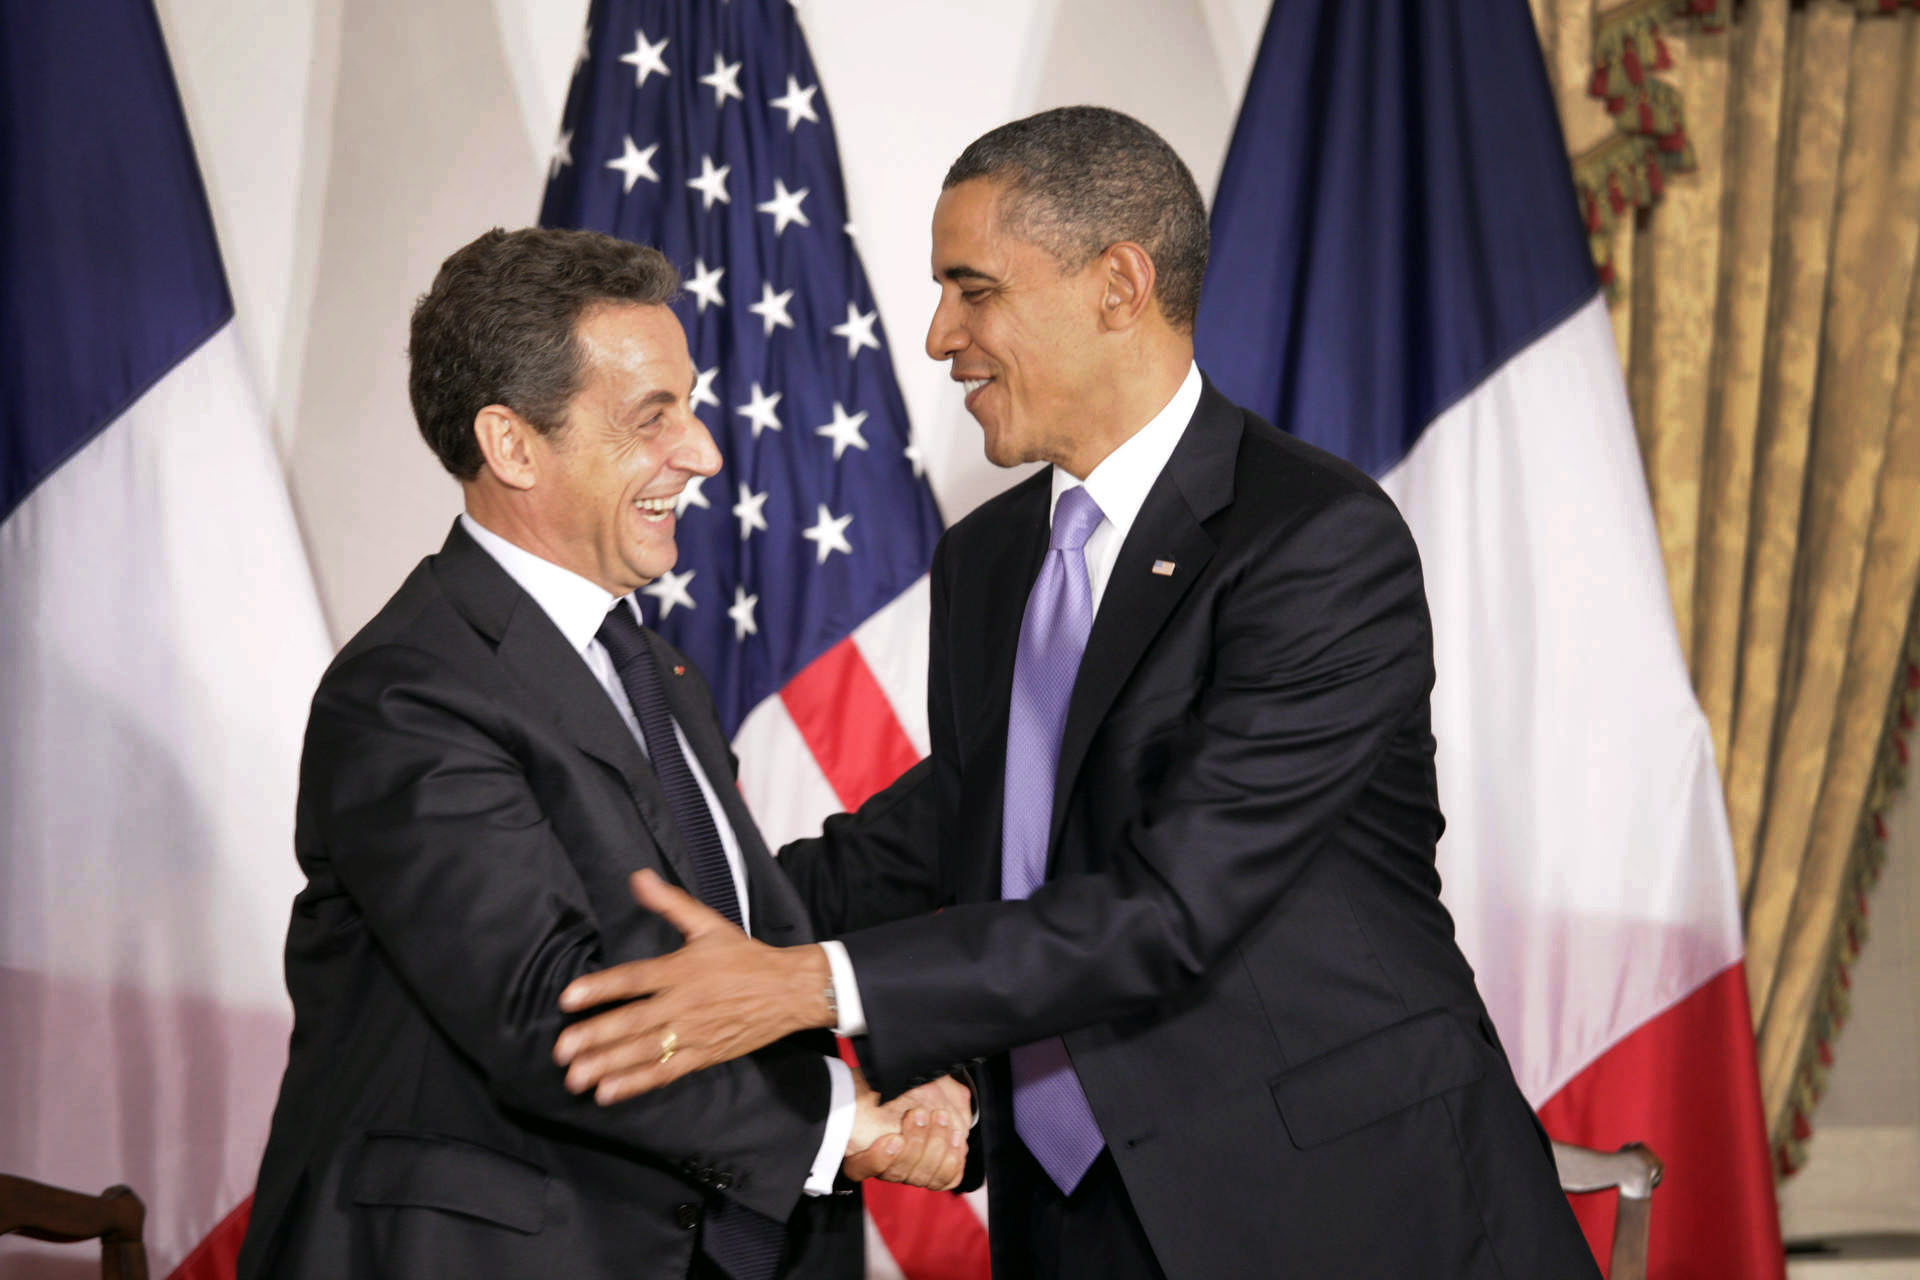 President Barack Obama greets President Nicolas Sarkozy of France